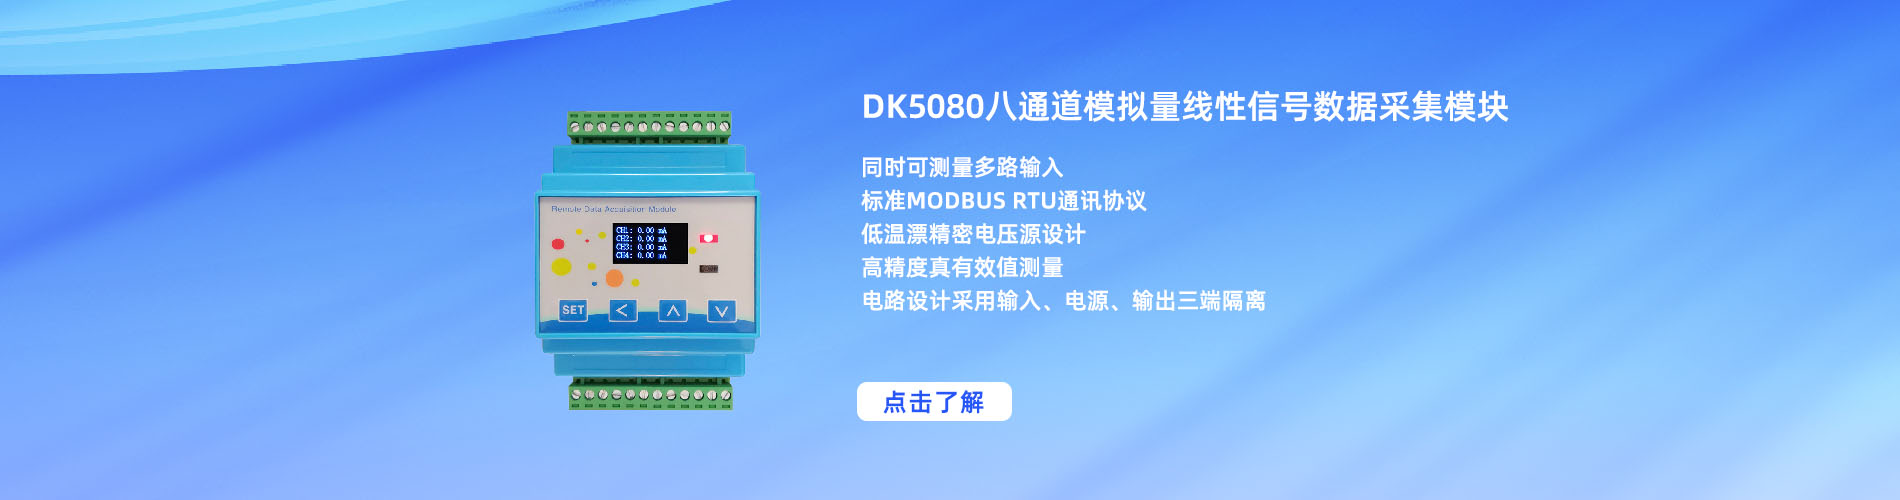 DK 5080